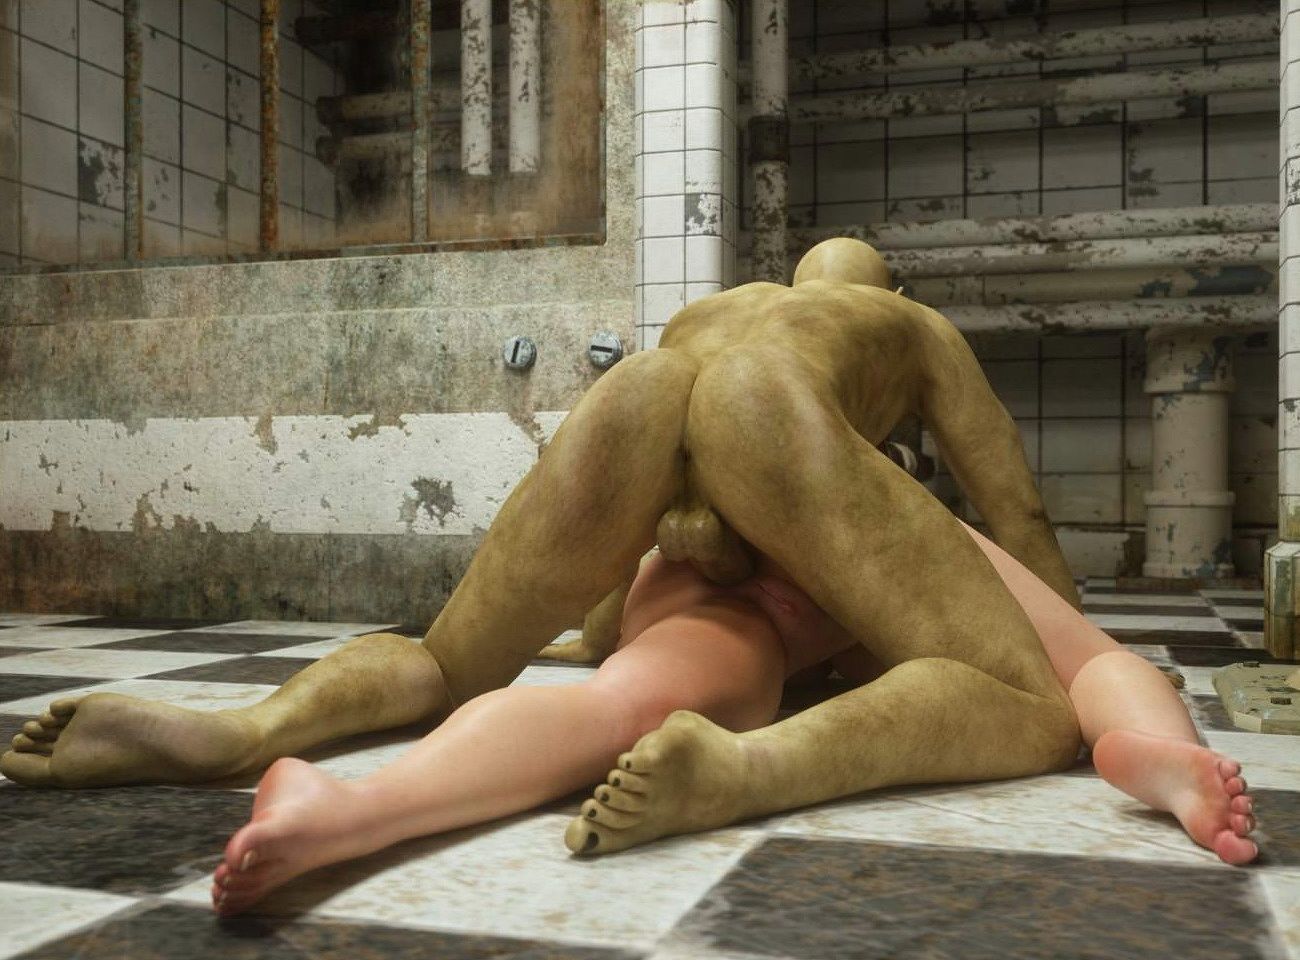 монстр вставляет свой половой член в анус лежащей на полу женщины. вид сзади крупным планом 